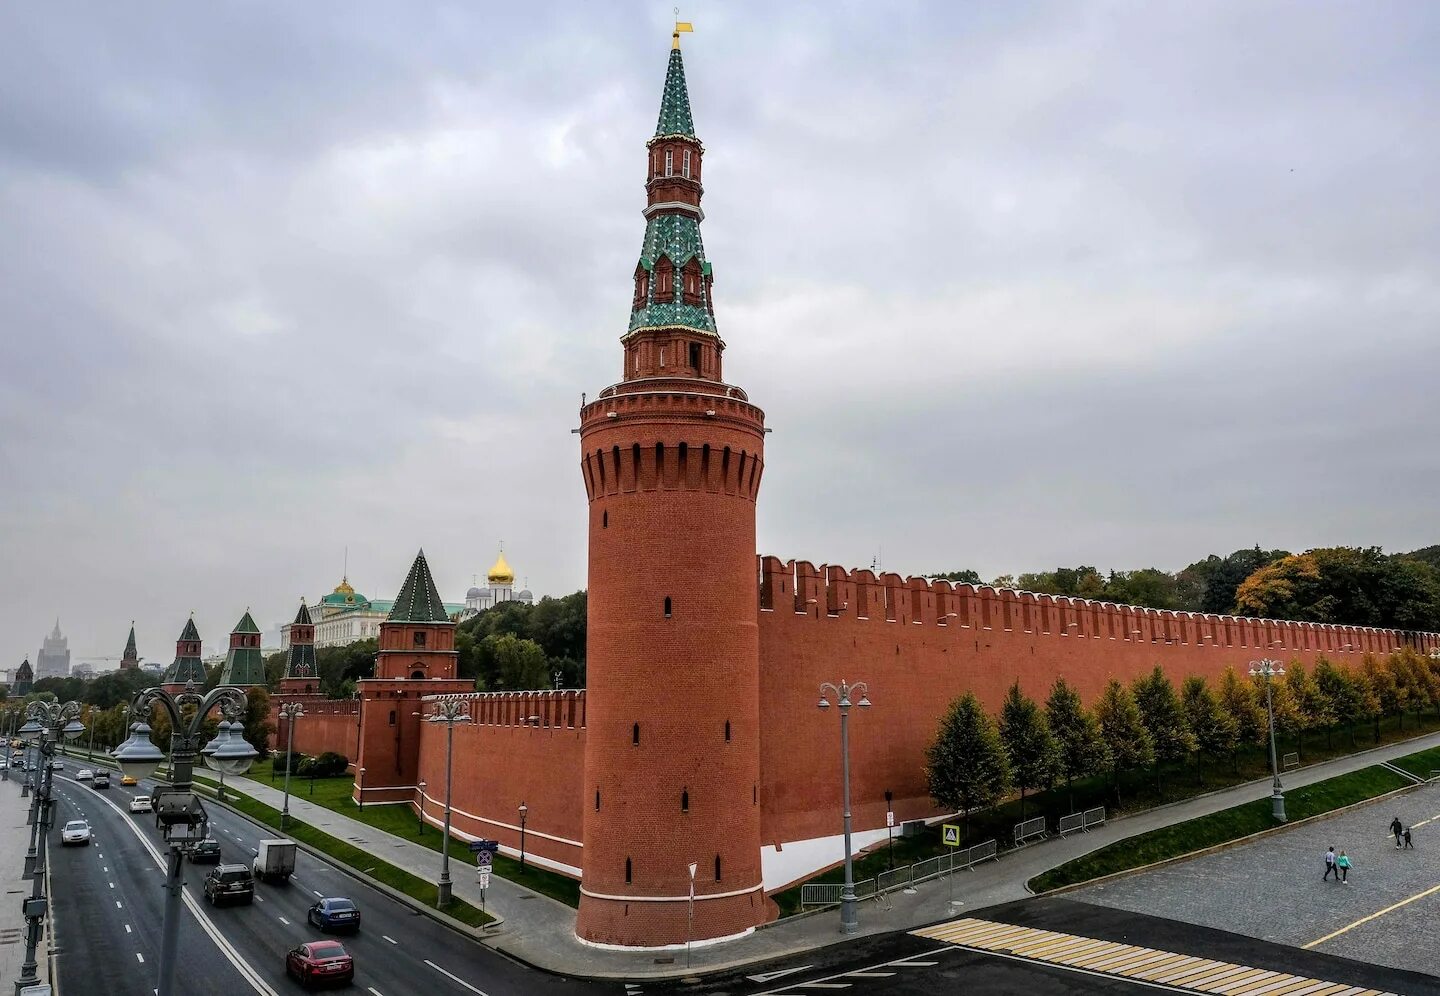 Кремлевская стена история